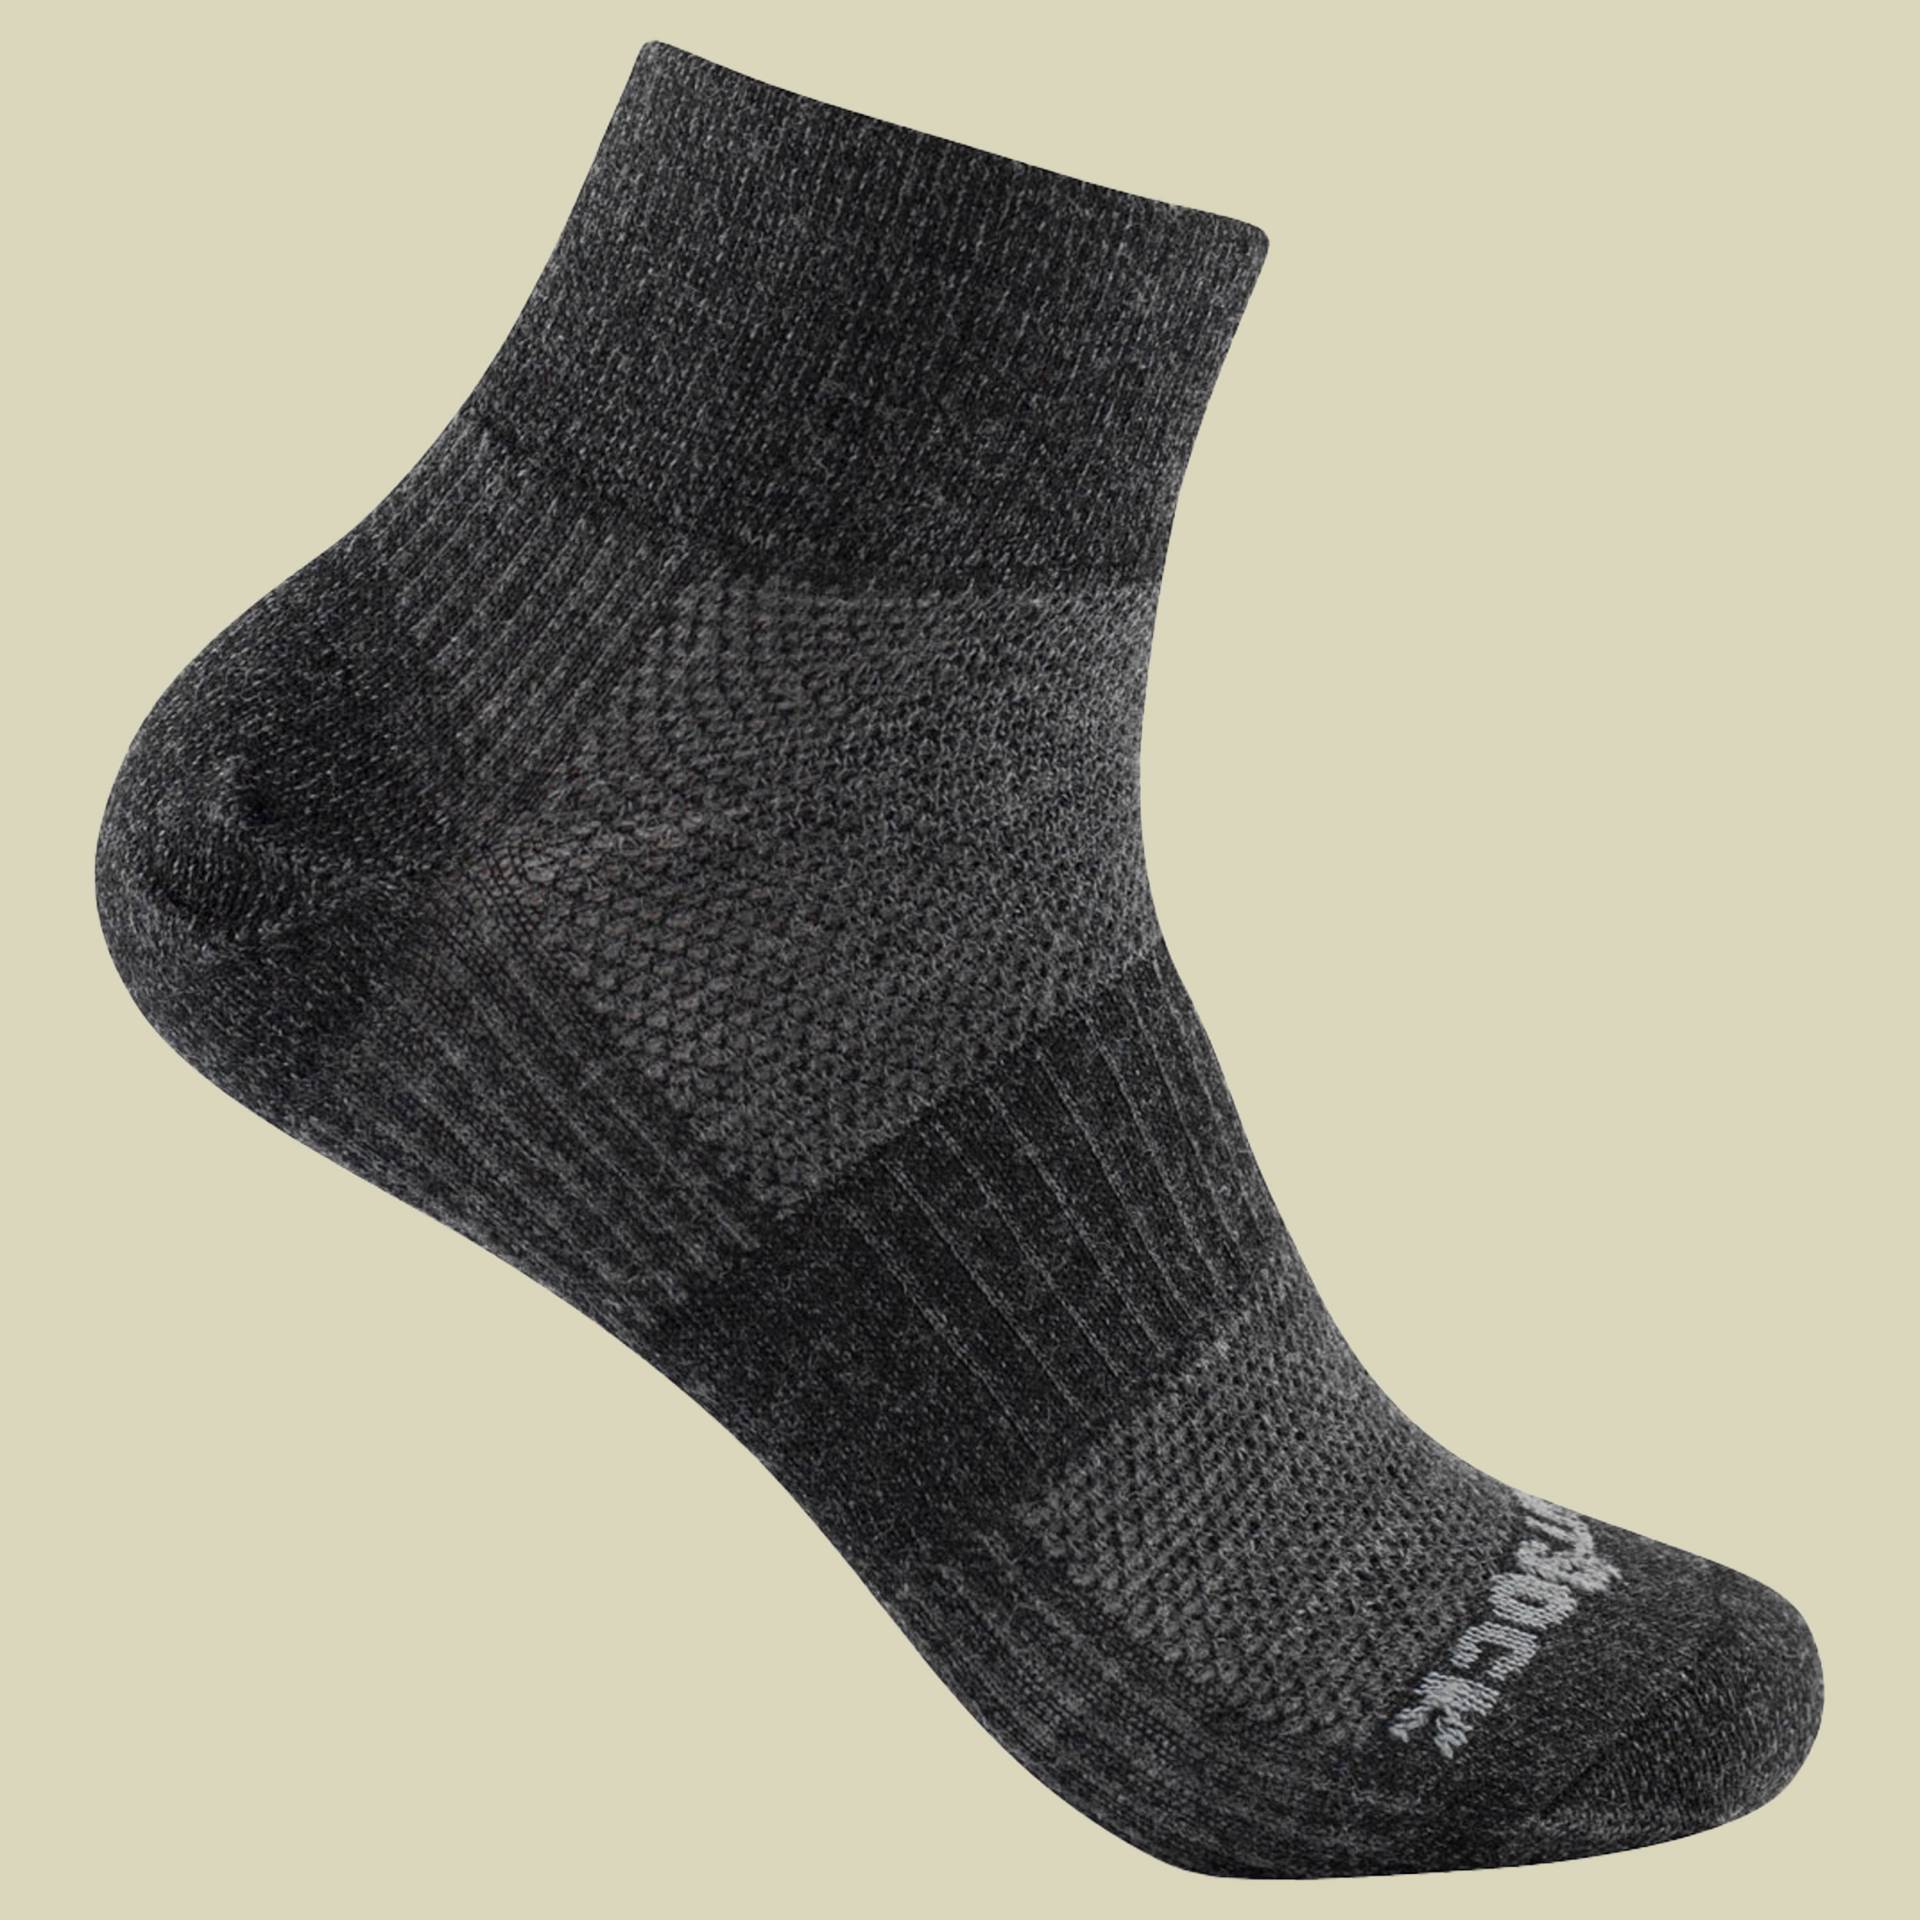 Merino Coolmesh II Quarter Größe 34-37 (S) Farbe grey black matt von Wrightsock